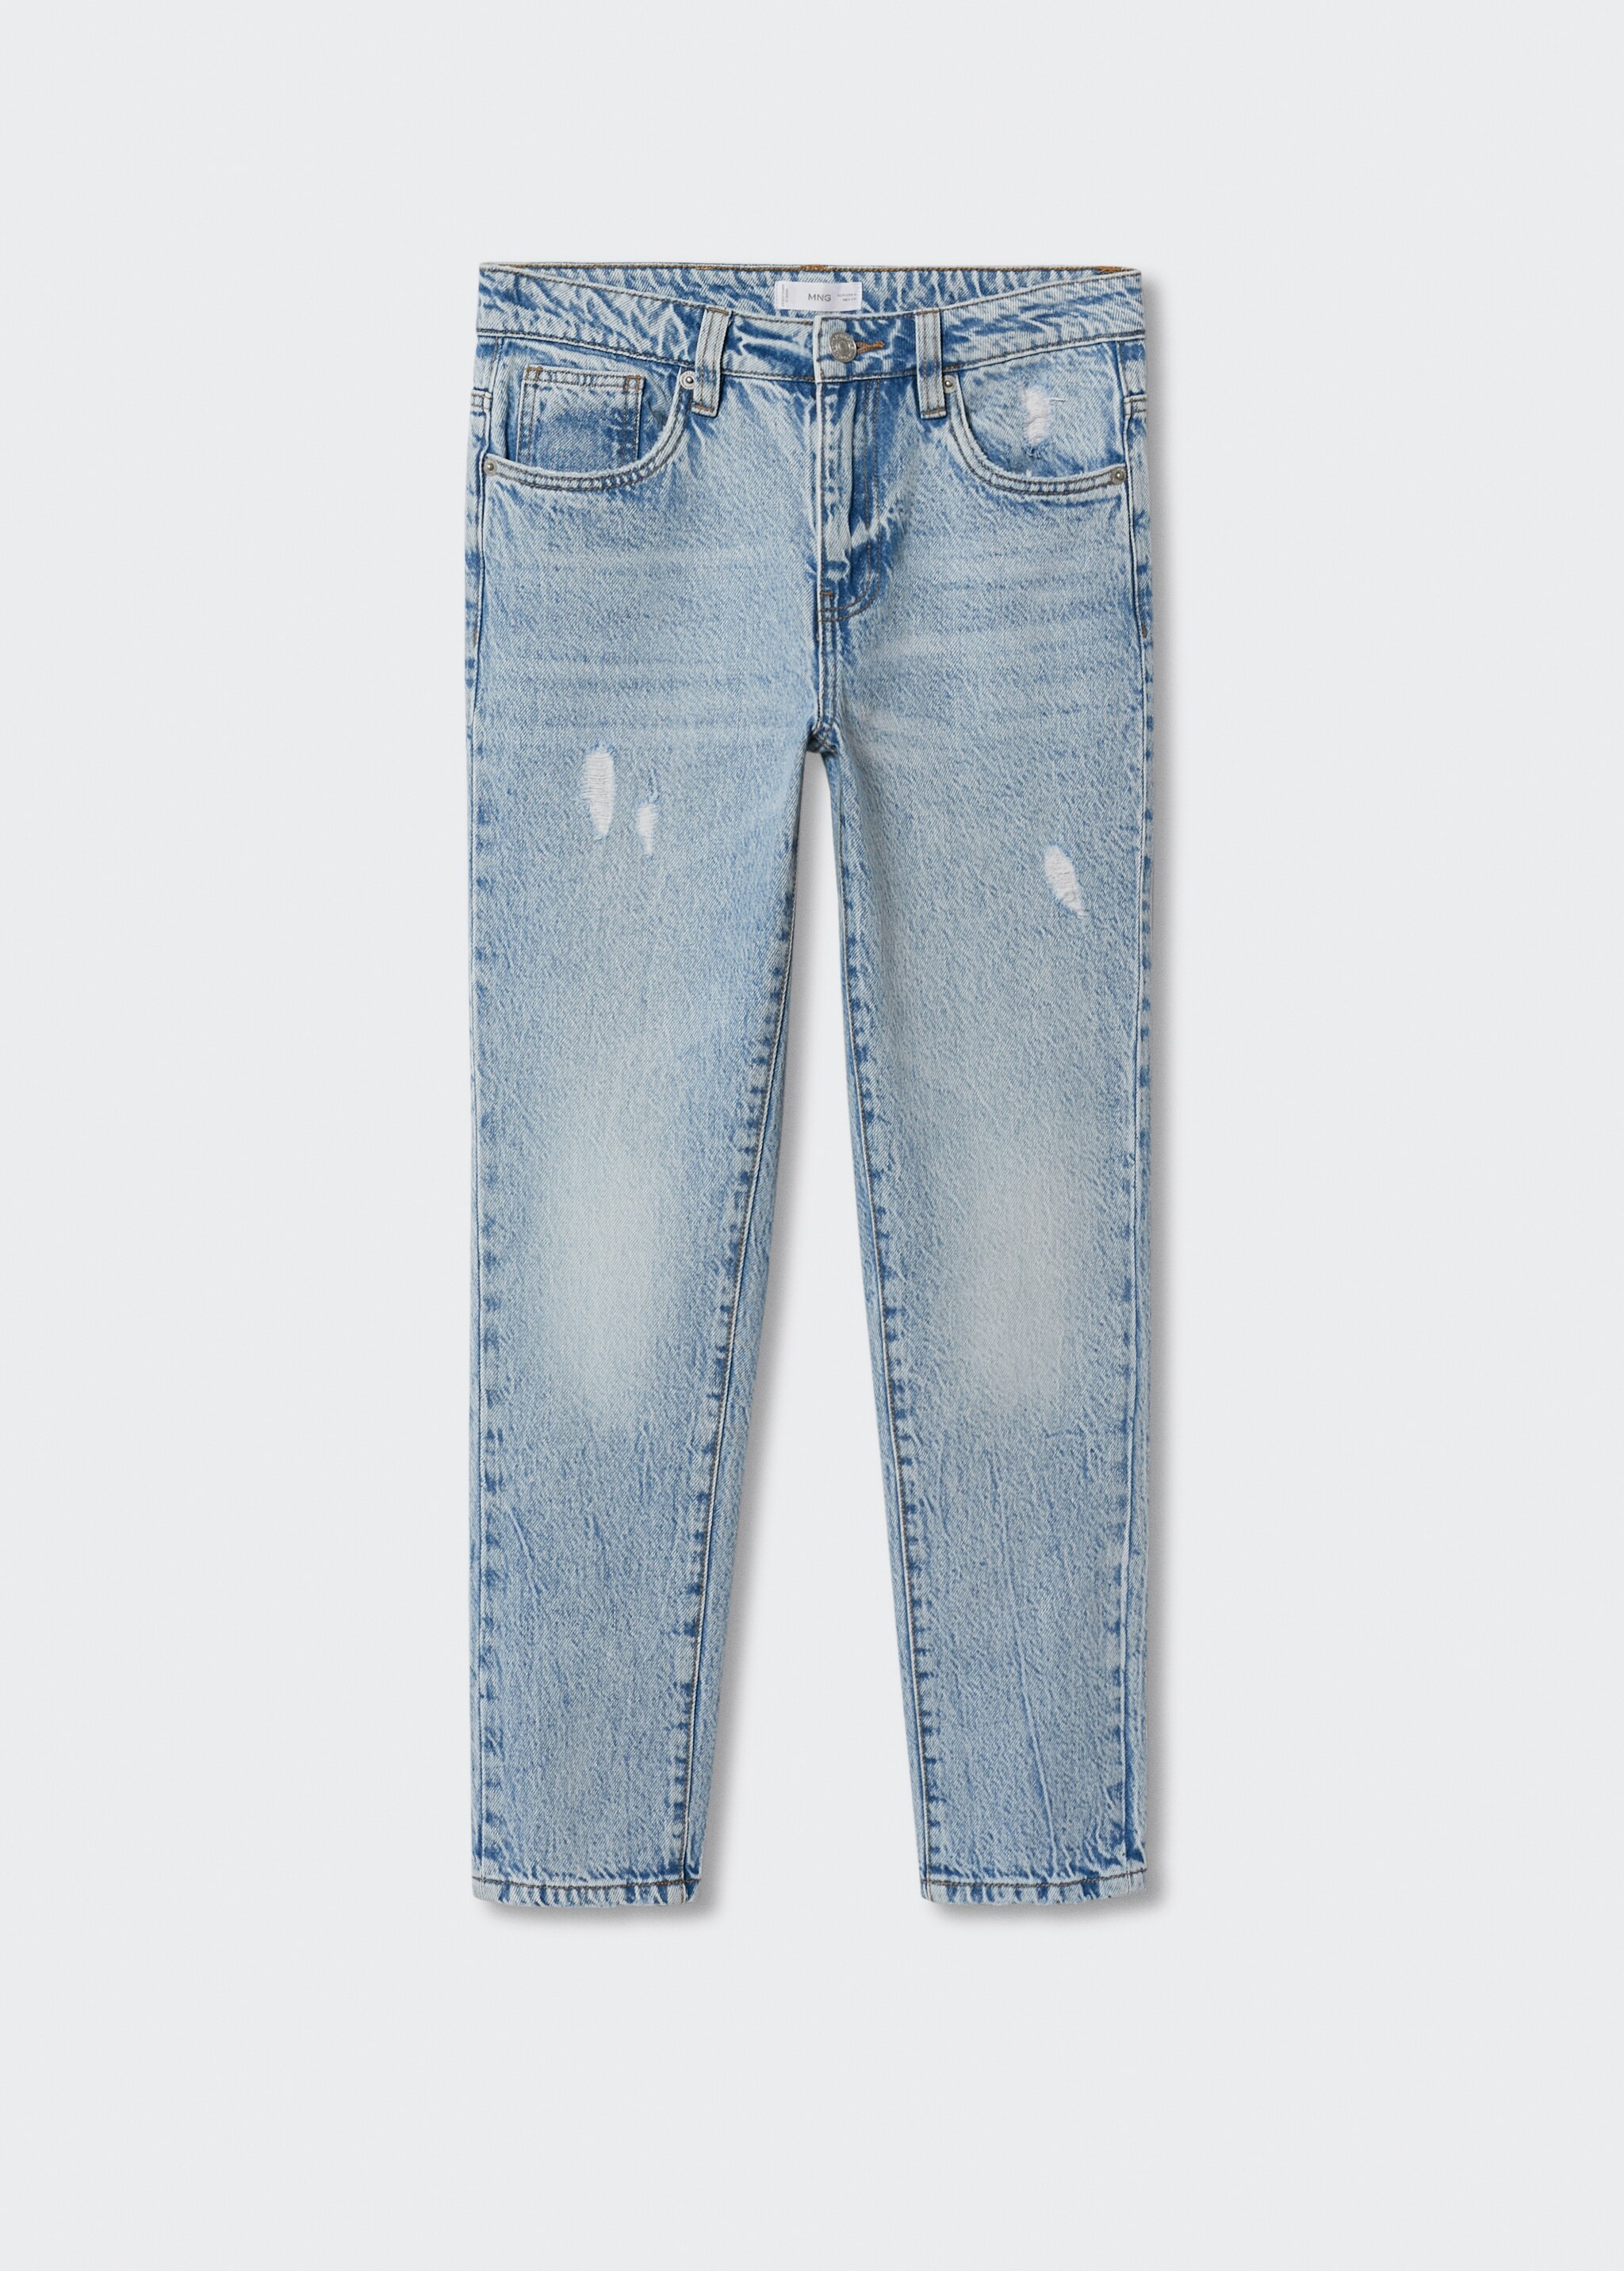 Jeans rectos tobilleros - Artículo sin modelo